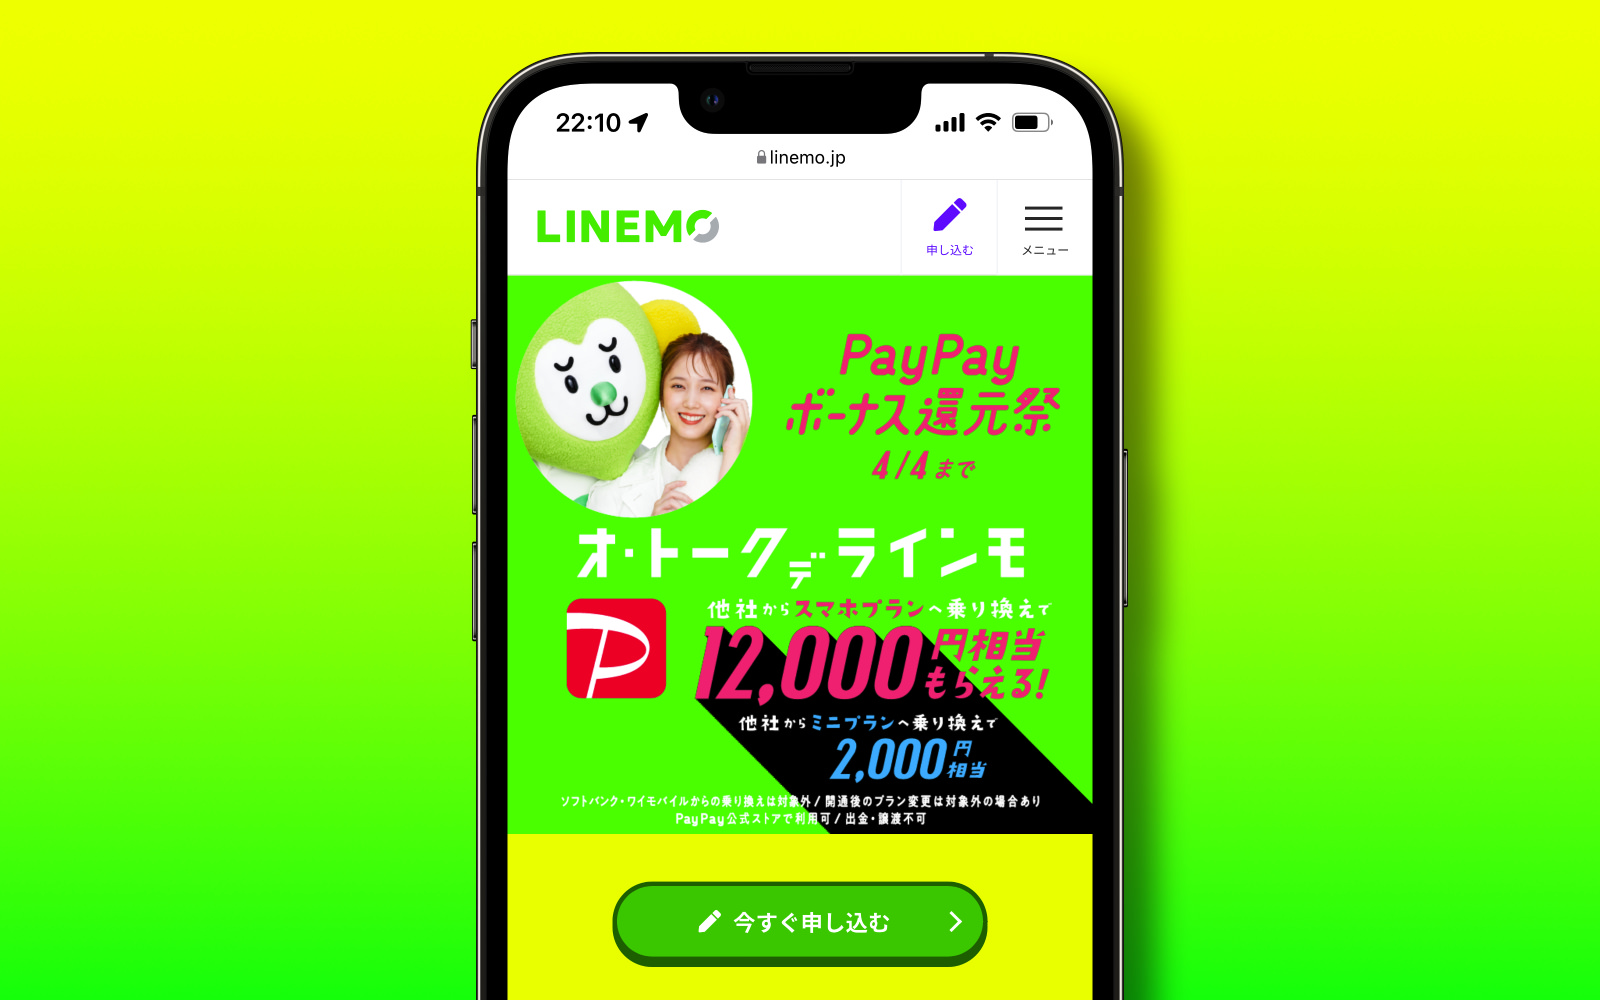 LINEMO Campaign